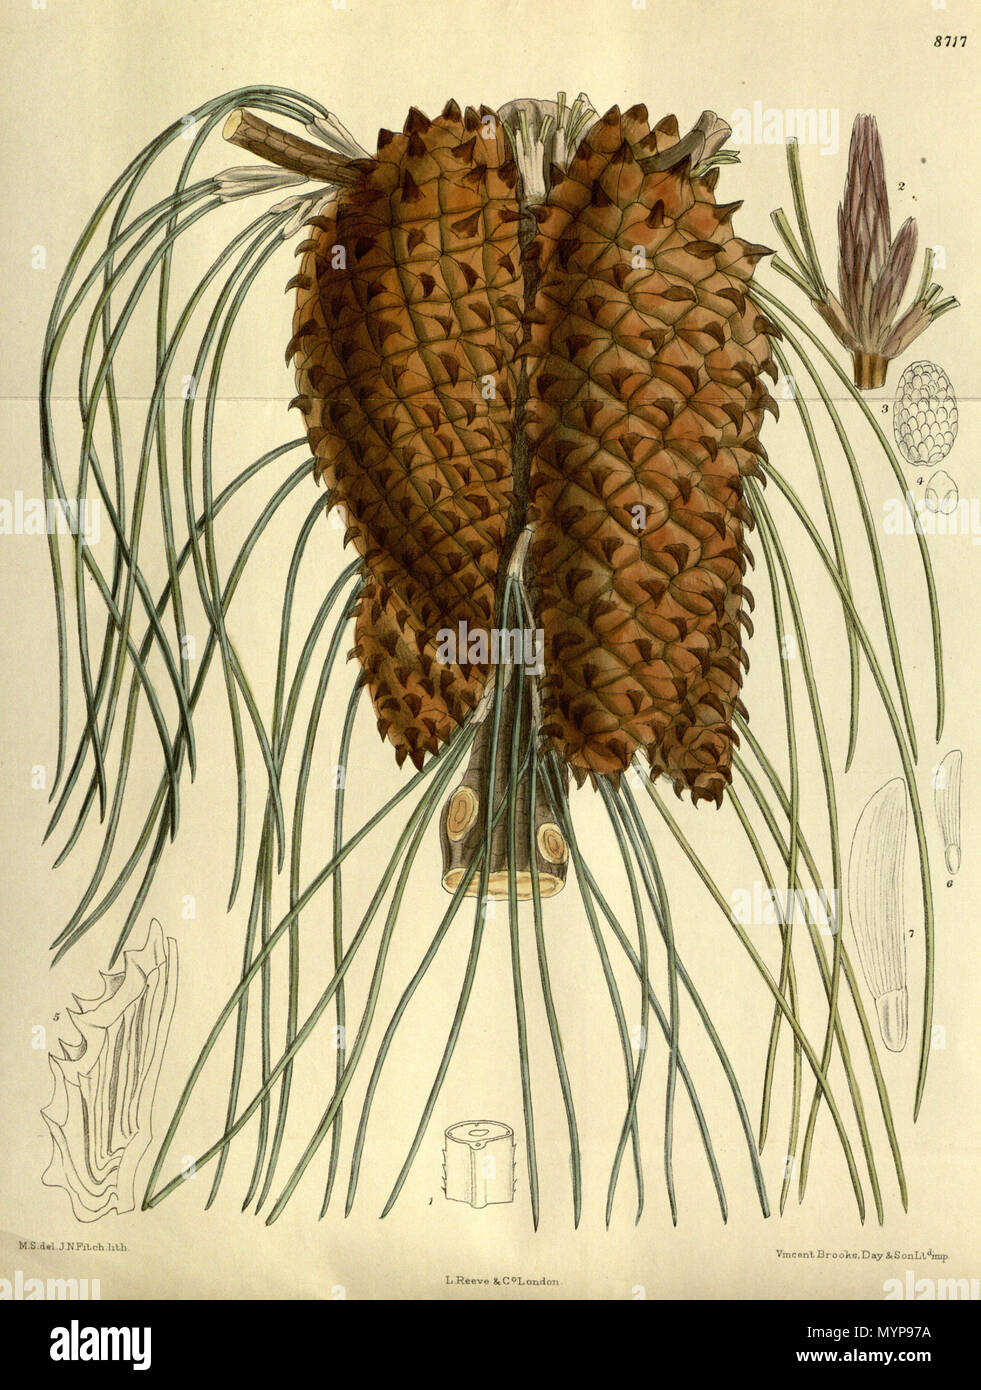 . Pinus tuberculata (= Pinus attenuata), Pinaceae . 1917. M.S. del., J.N.Fitch lith. 423 Pinus tuberculata 143-8717 Stock Photo